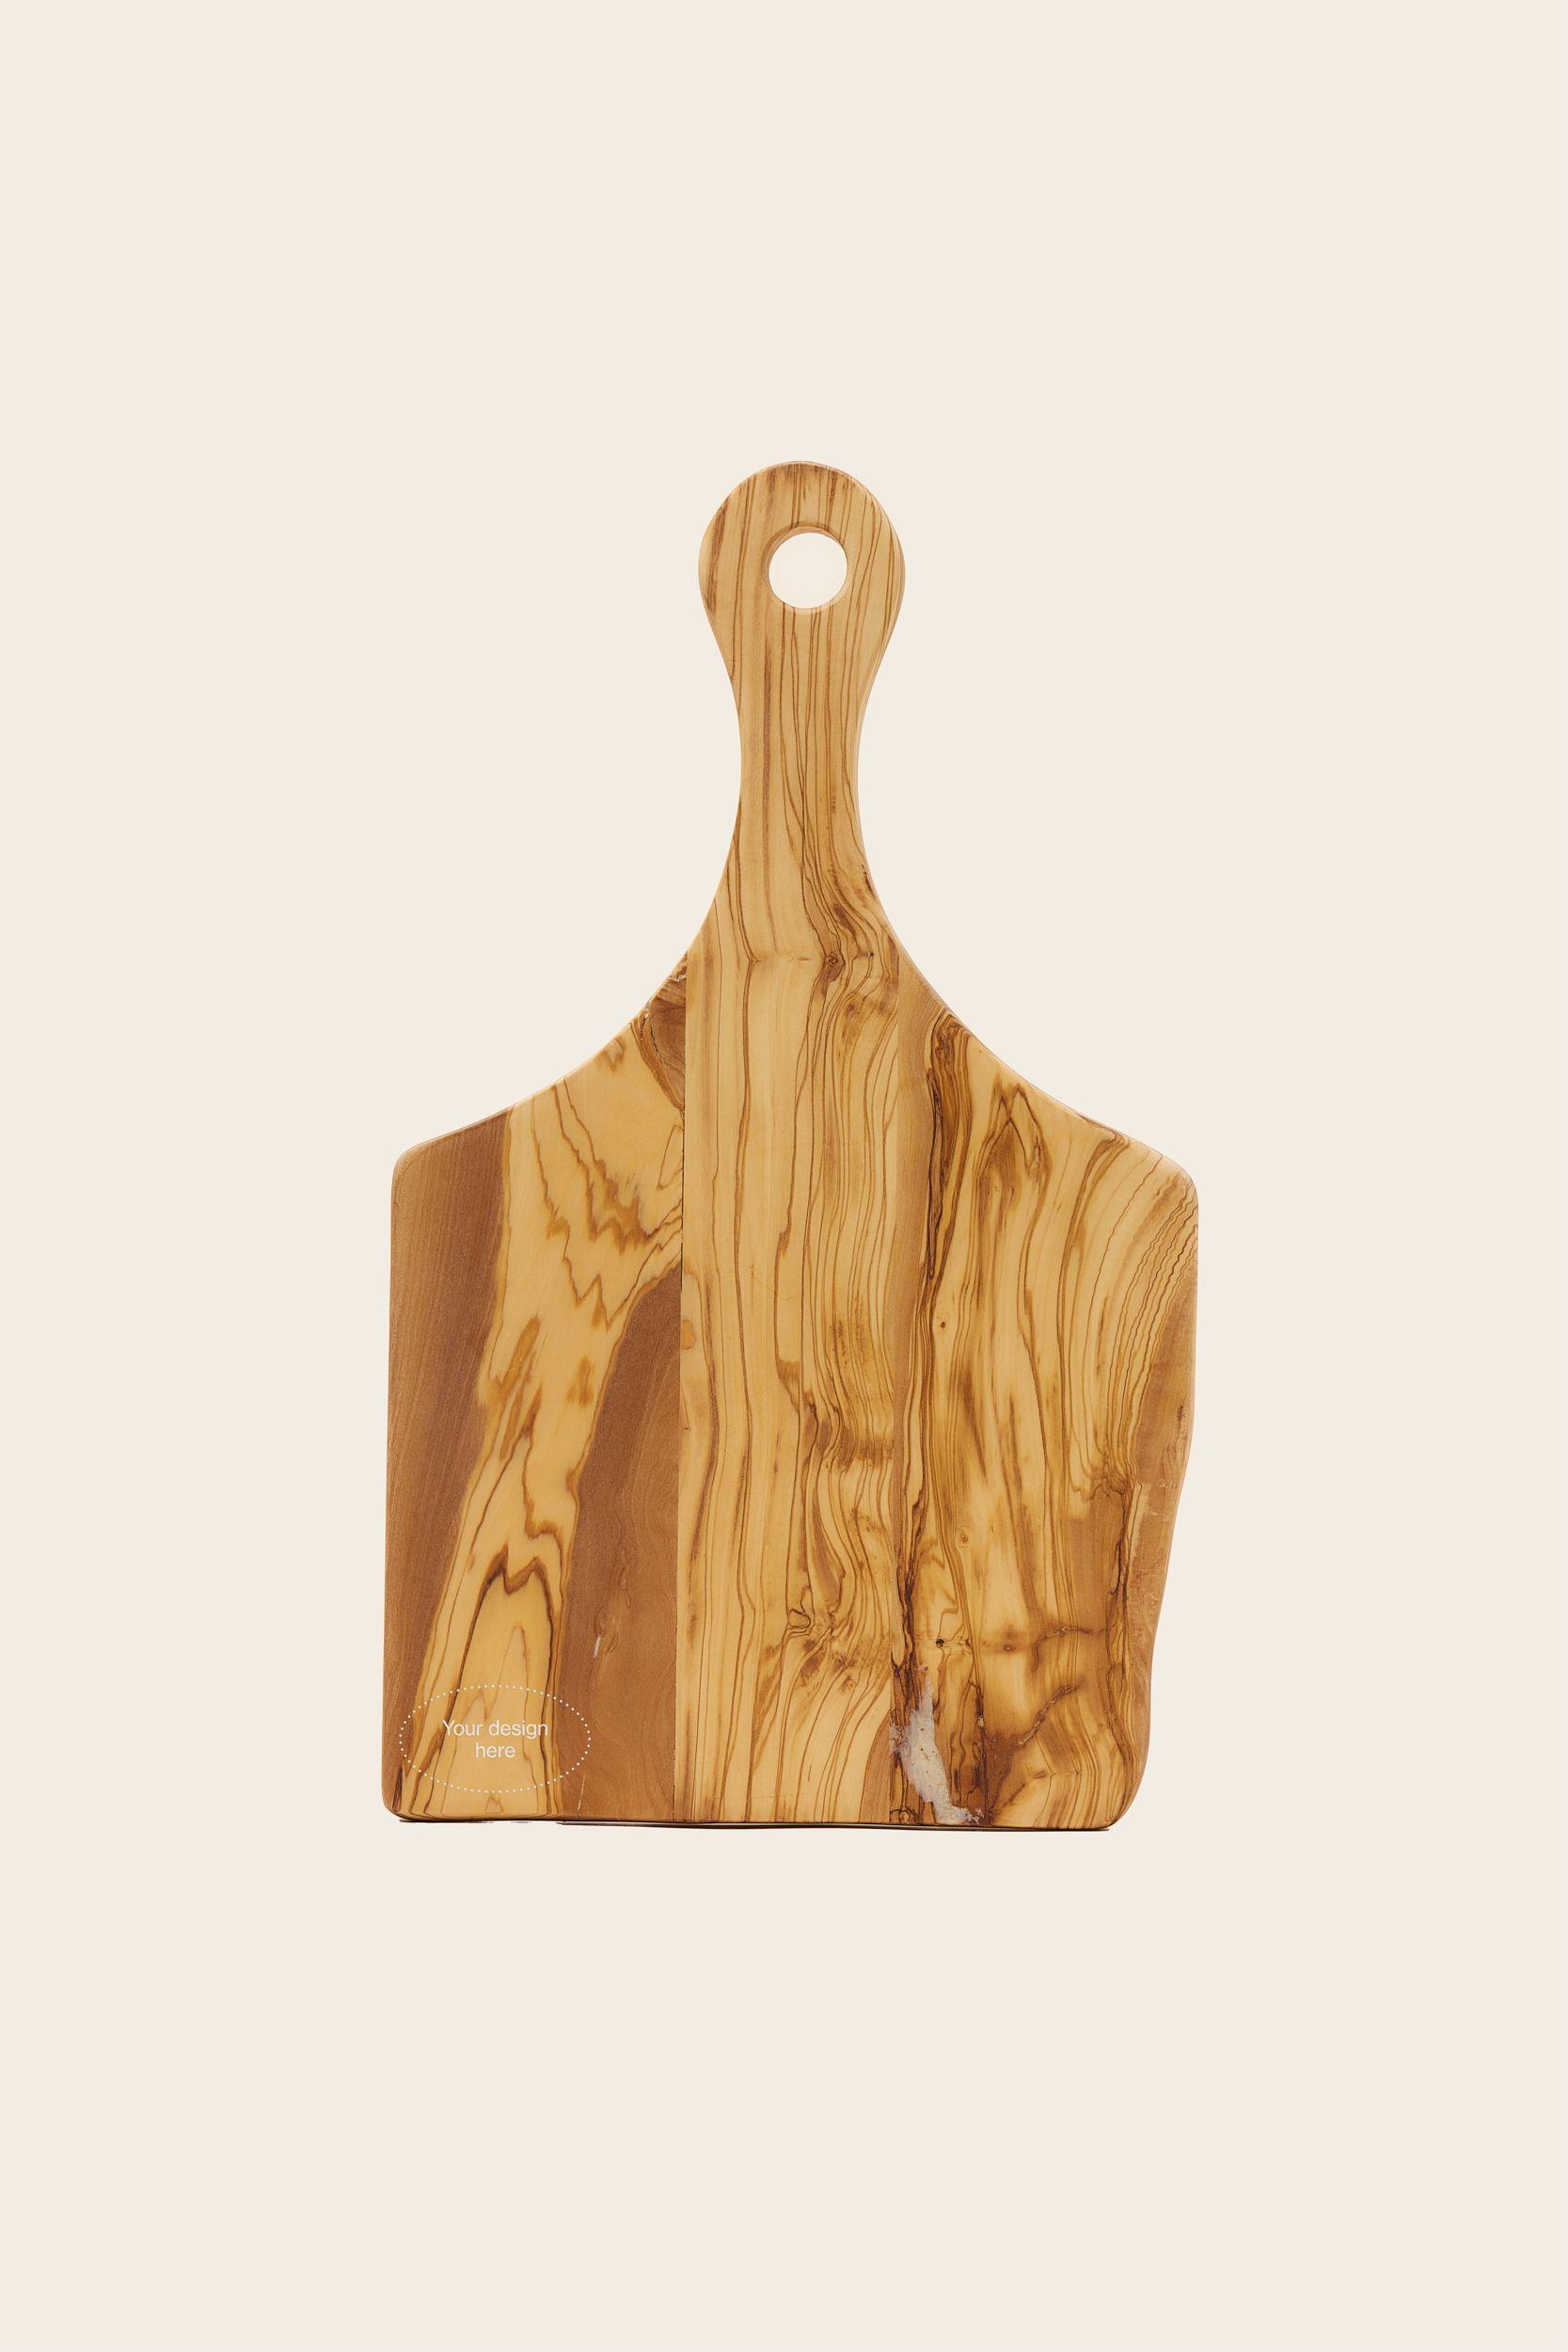 MERCHERY_Handmade cutting board+logo.jpg